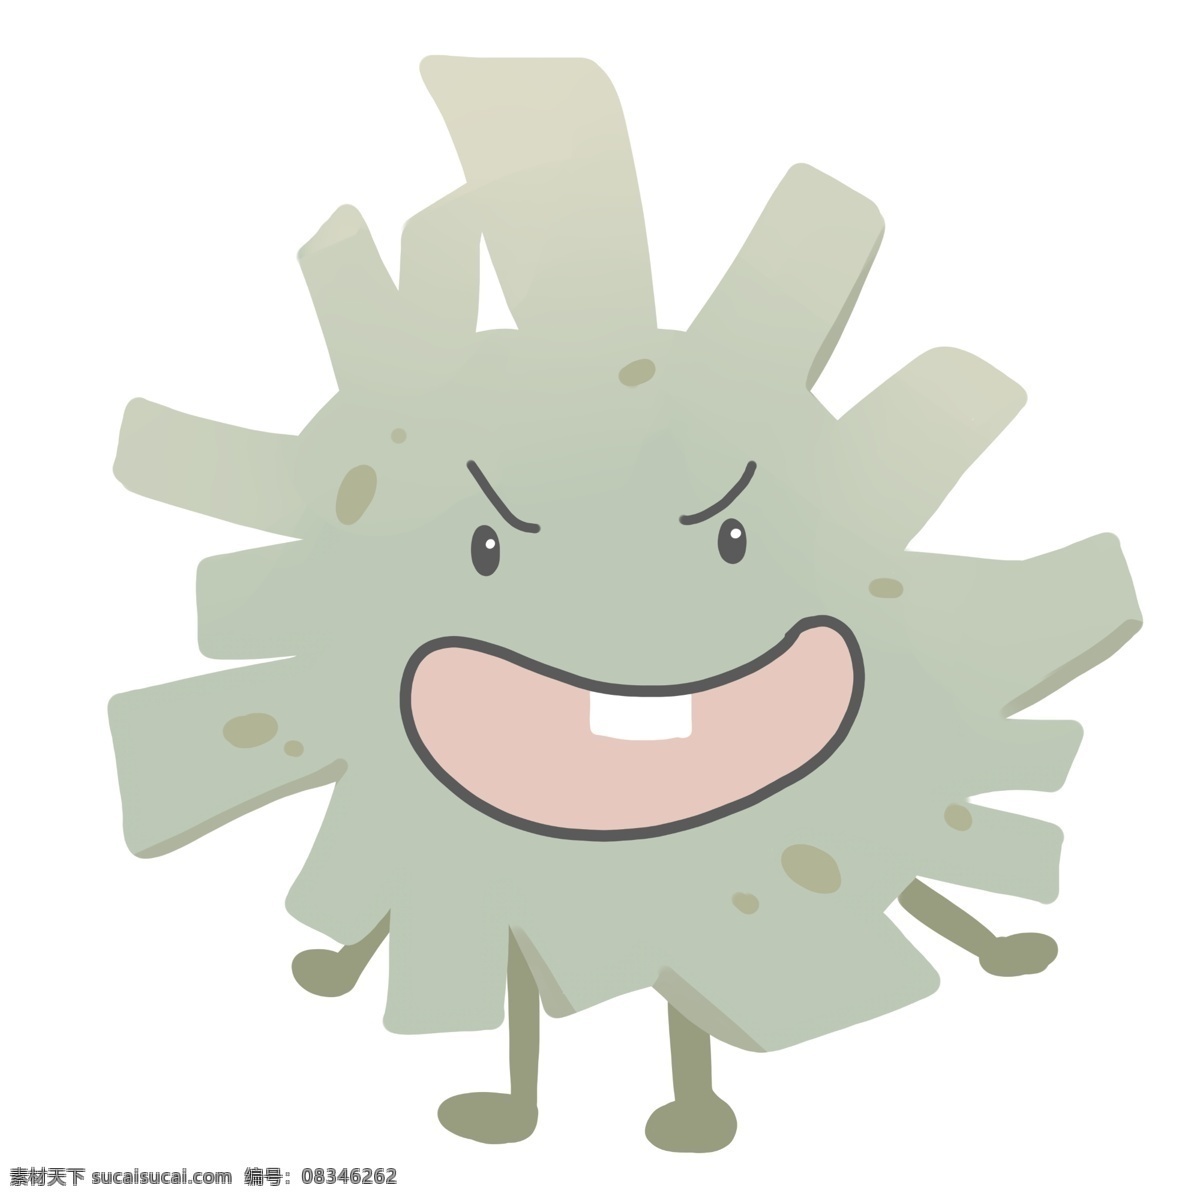 龅牙 蓝色 细菌 插画 白色的龅牙 有害细菌 卡通插画 细菌插画 病菌插画 有益细菌 浅蓝色的细菌